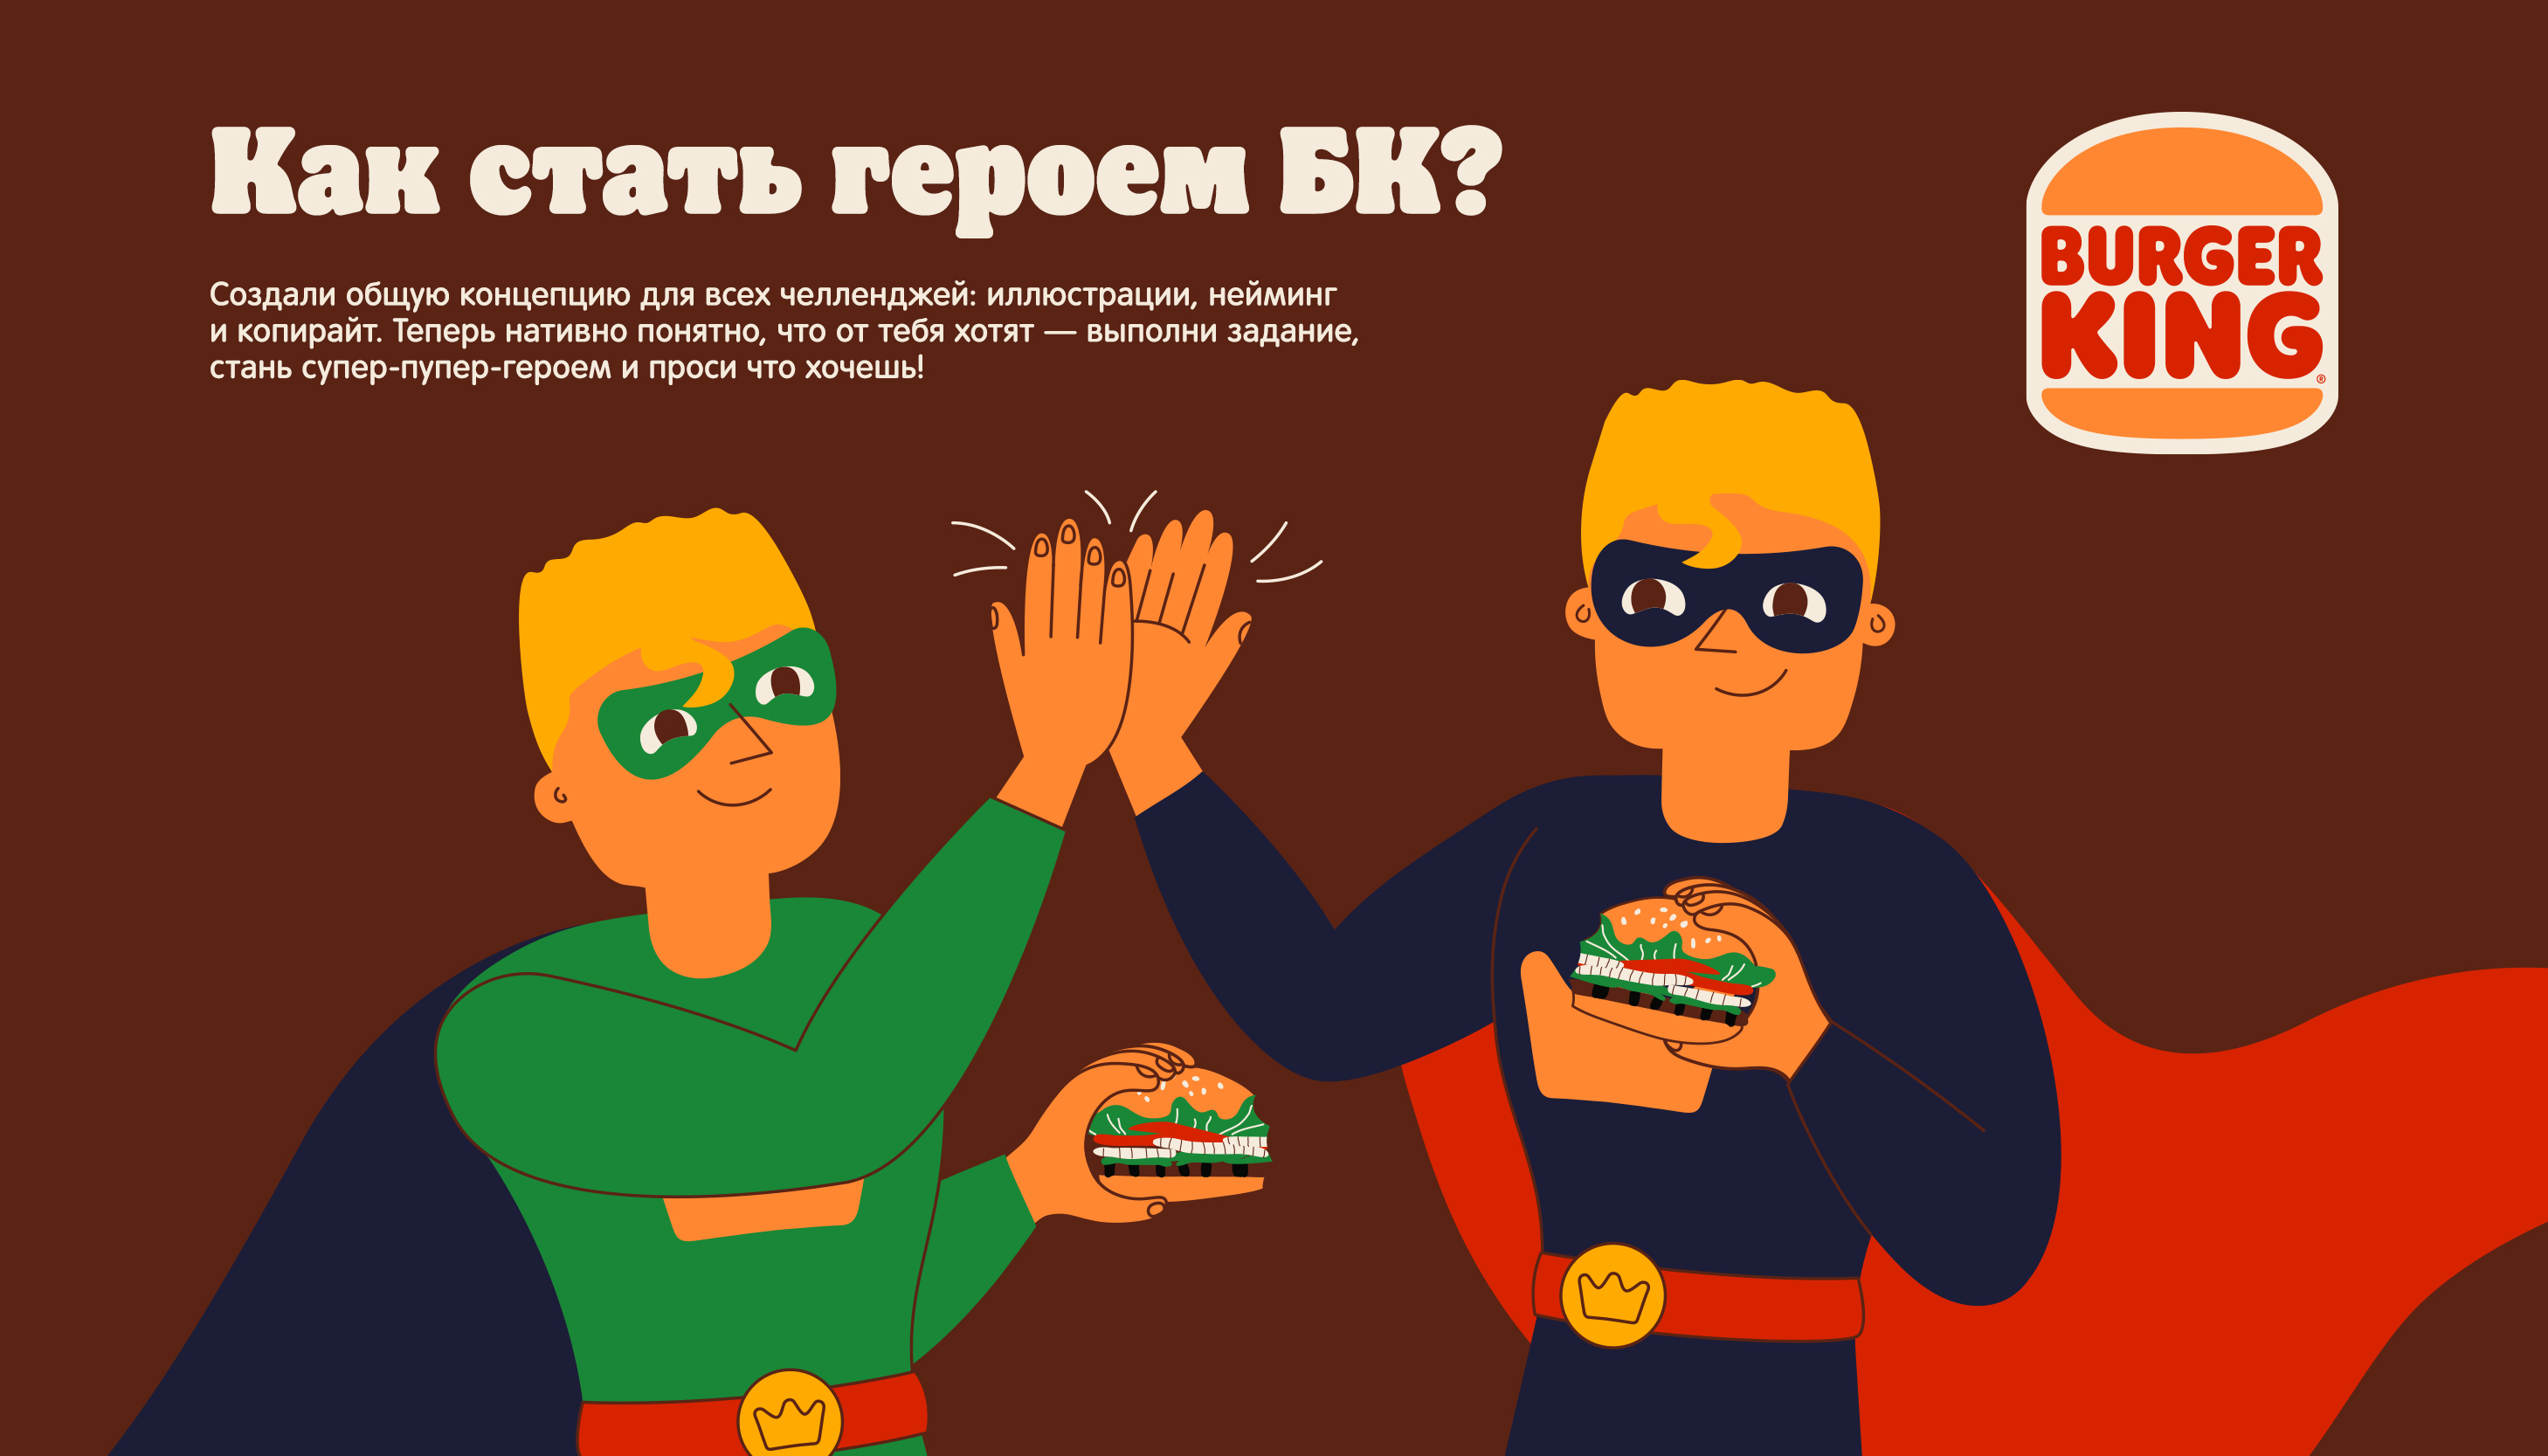 Иллюстрации для Бургер Кинга — Изображение №4 — Иллюстрация, Графика на Dprofile